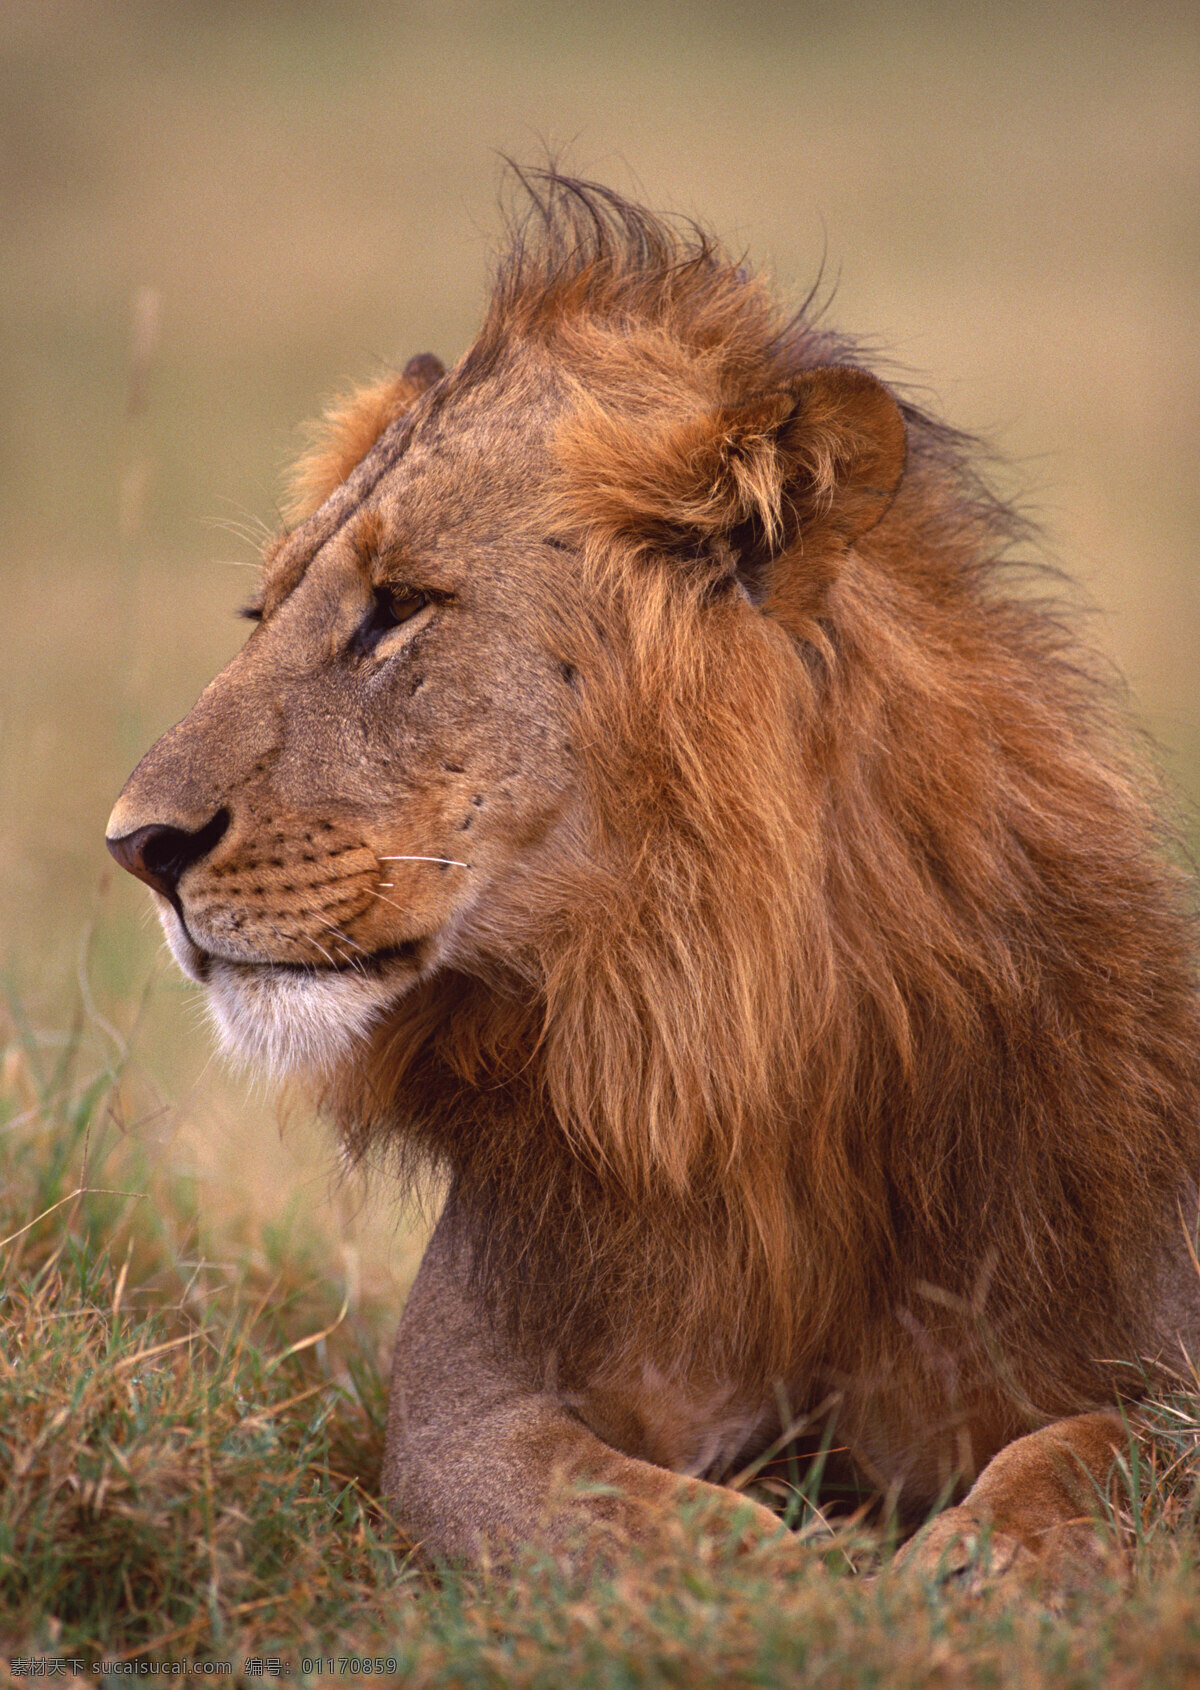 狮子 狮王 百兽之王 猛禽 野生动物 保护动物 草原动物 肉食动物 哺乳动物 生物世界